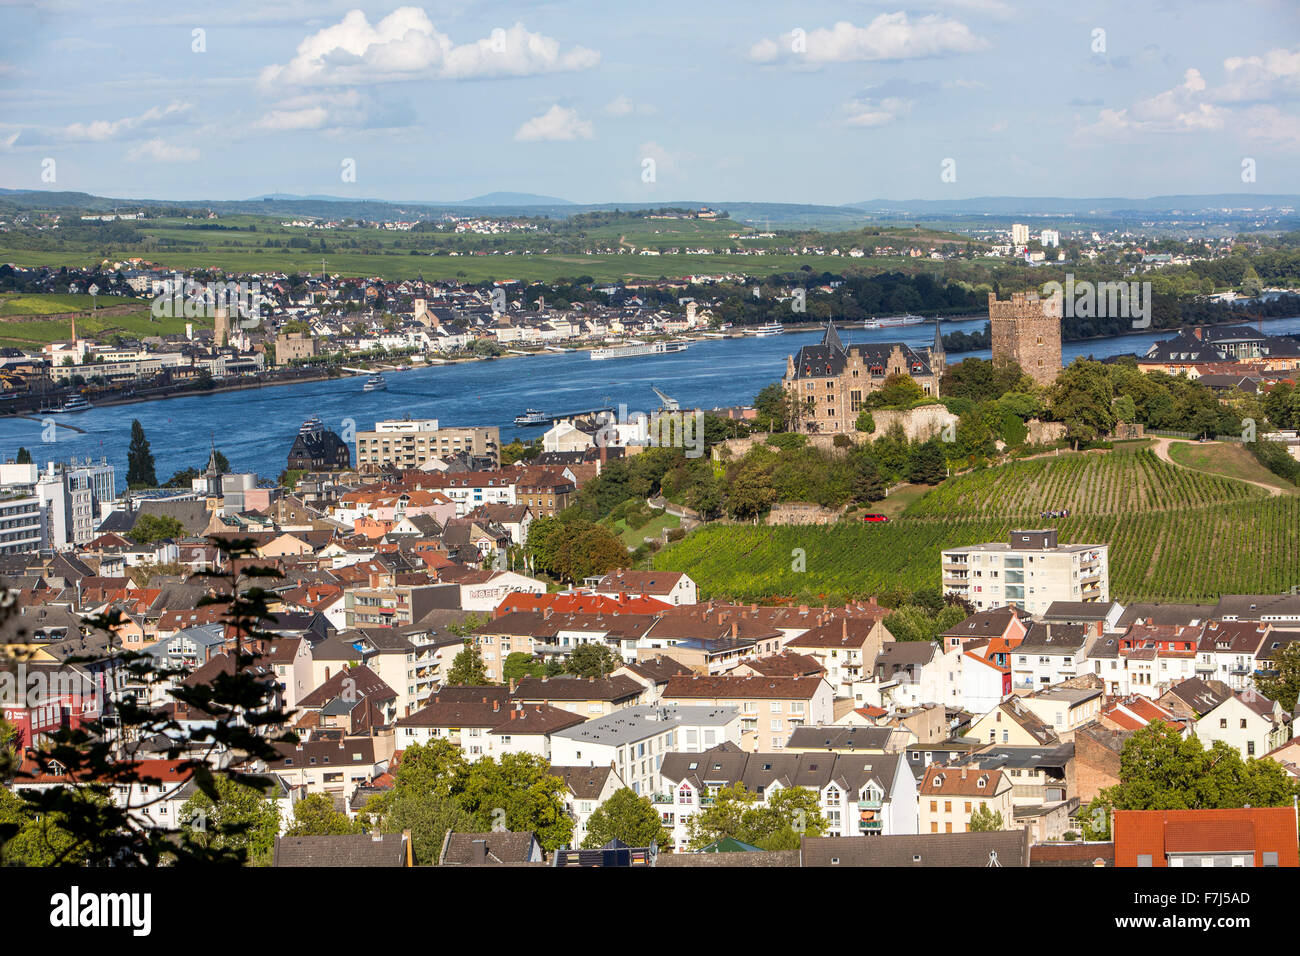 Stadt Bingen, oberen mittleren Rheintal, Deutschland, Burg Klopp, Stockfoto